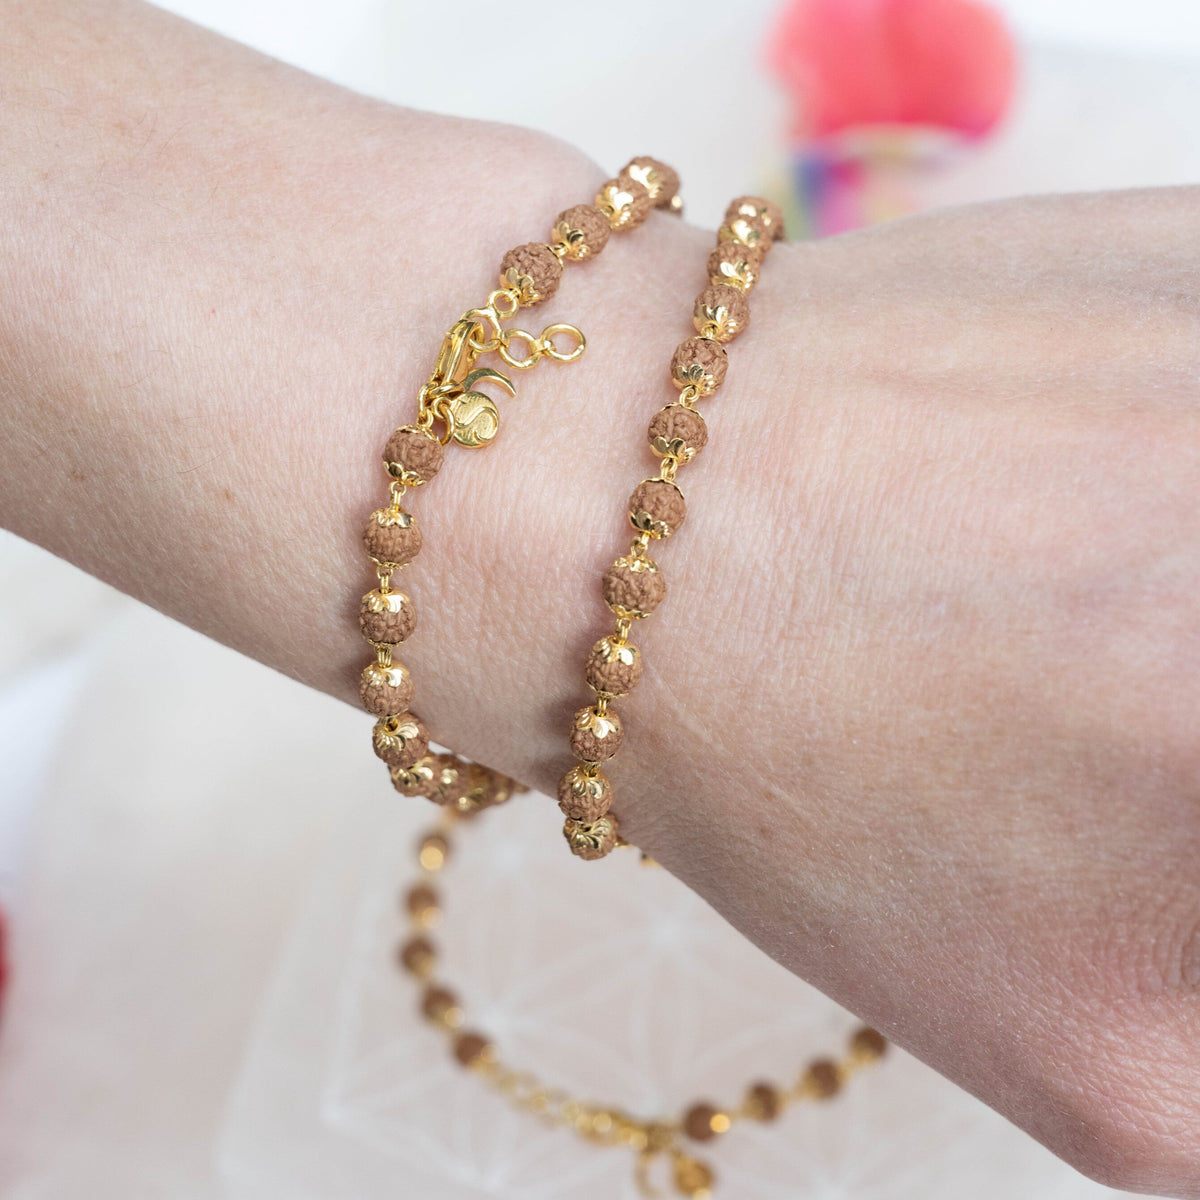 22 Karat Gold Rudraksh Bracelet - BrMs25567 - US$ 900 - 22k gold bracelet  is designed with beaded Rudraksha beads and Gold balls. Machine cuts adds  shine to